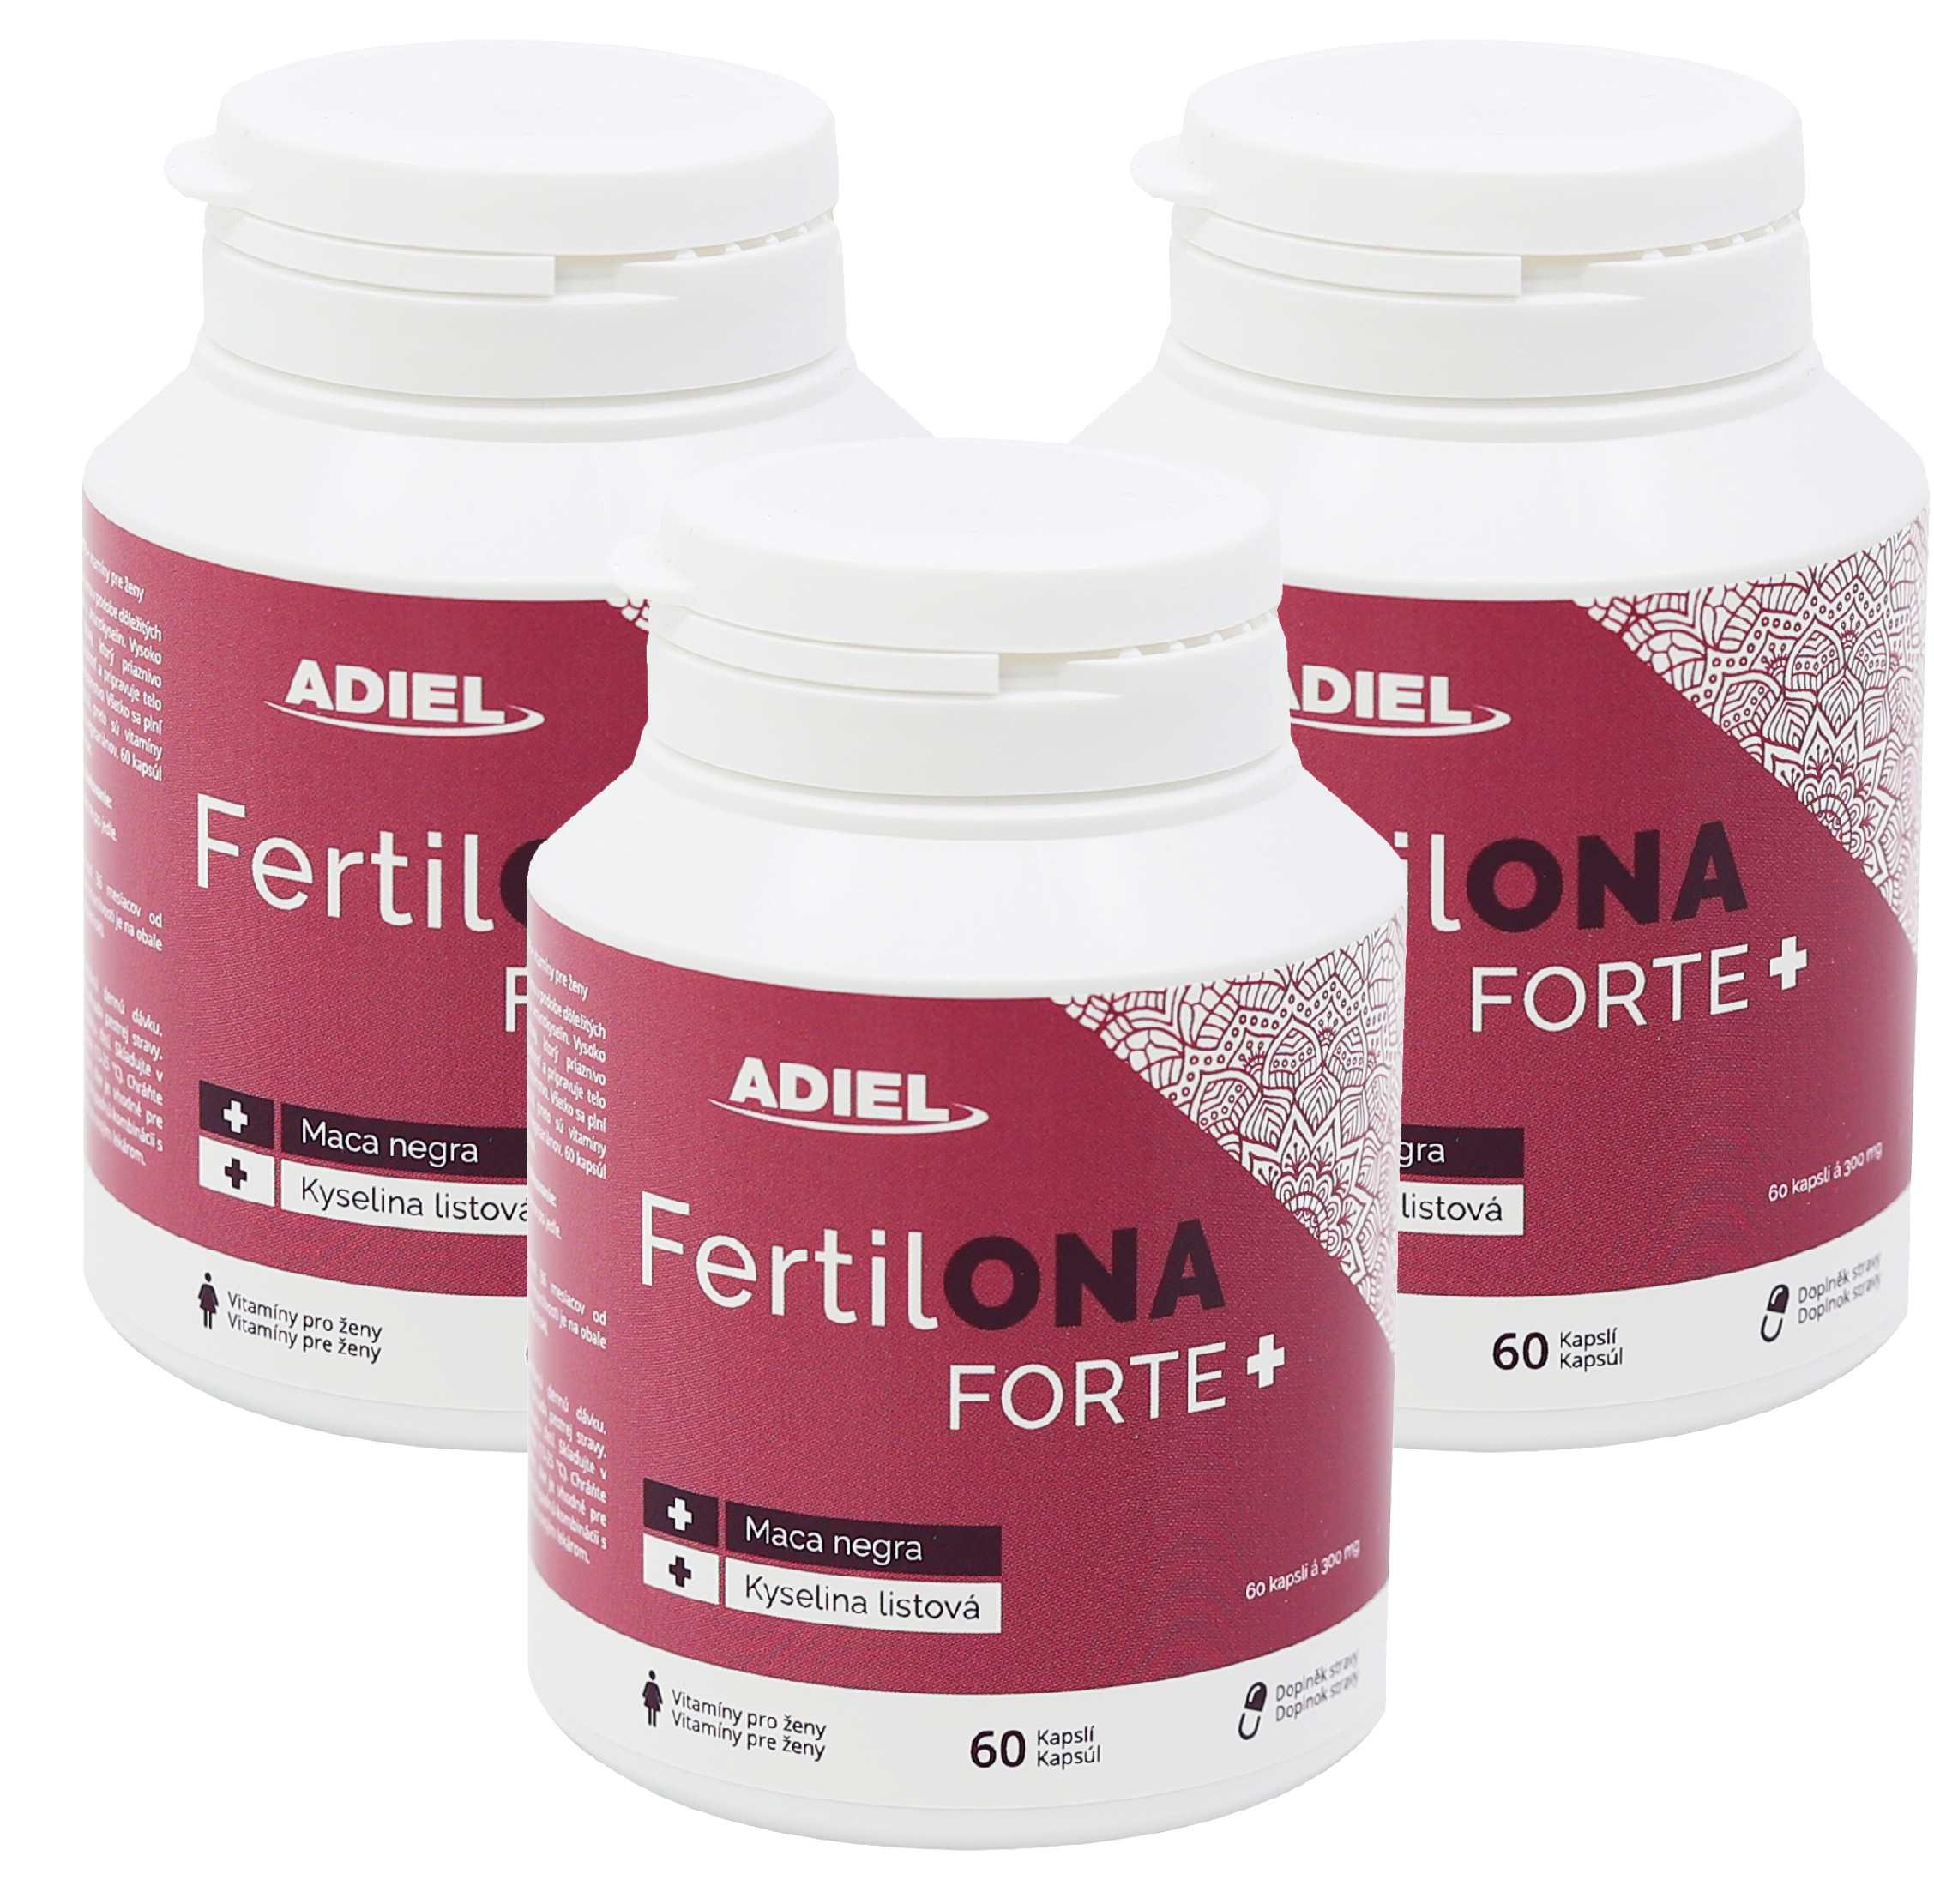 E-shop ADIEL FertilONA forte plus – vitamíny pre ženy 60 kapslí 3 ks v balenie: 3x60 kapslí